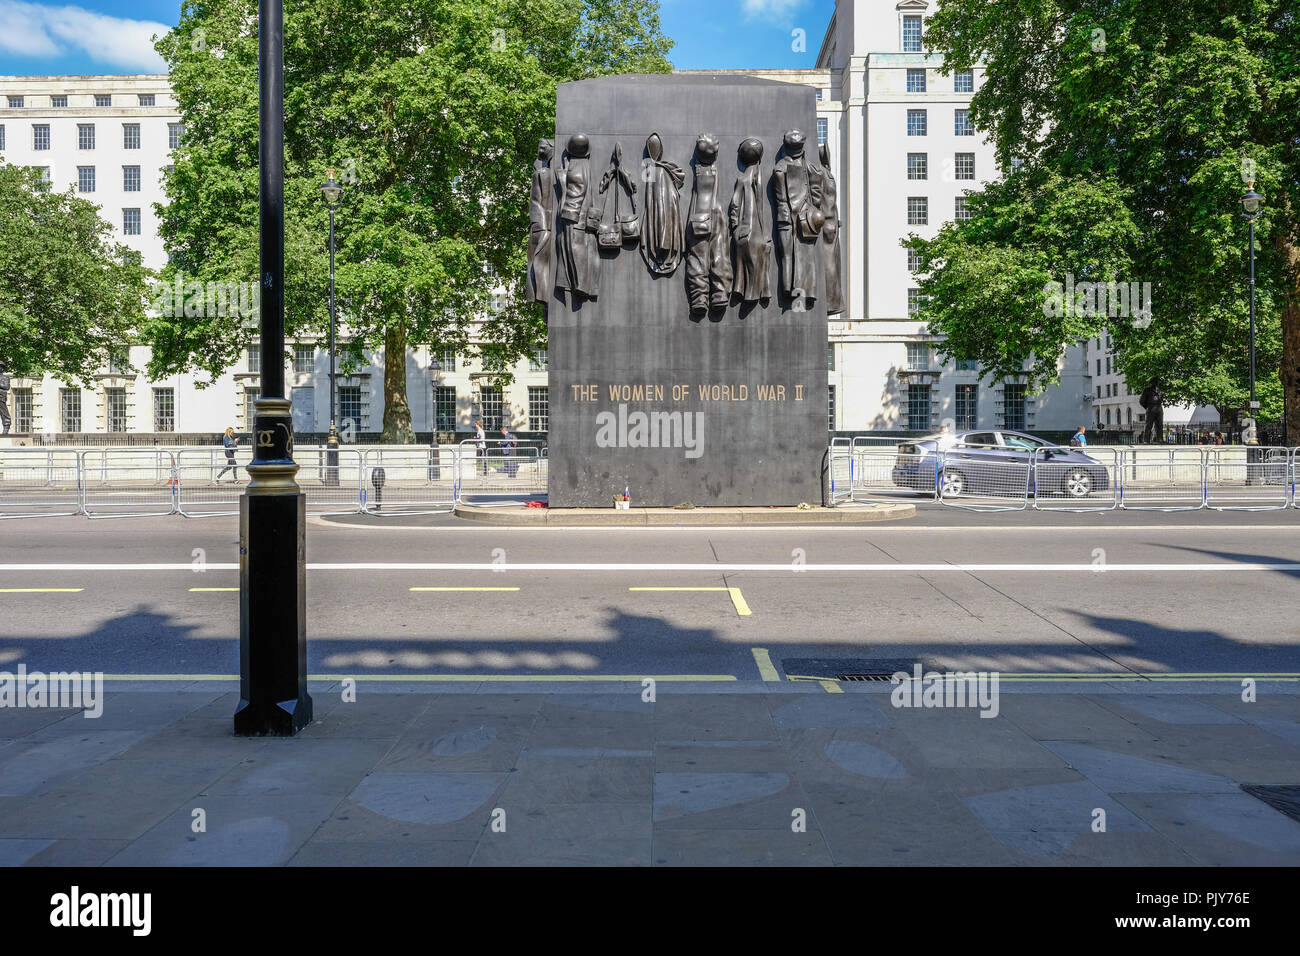 Whitehall, Londres, Reino Unido - 8 de junio de 2018: Las mujeres de la Segunda Guerra Mundial memorial en Whitehall en abright día soleado. Foto de stock